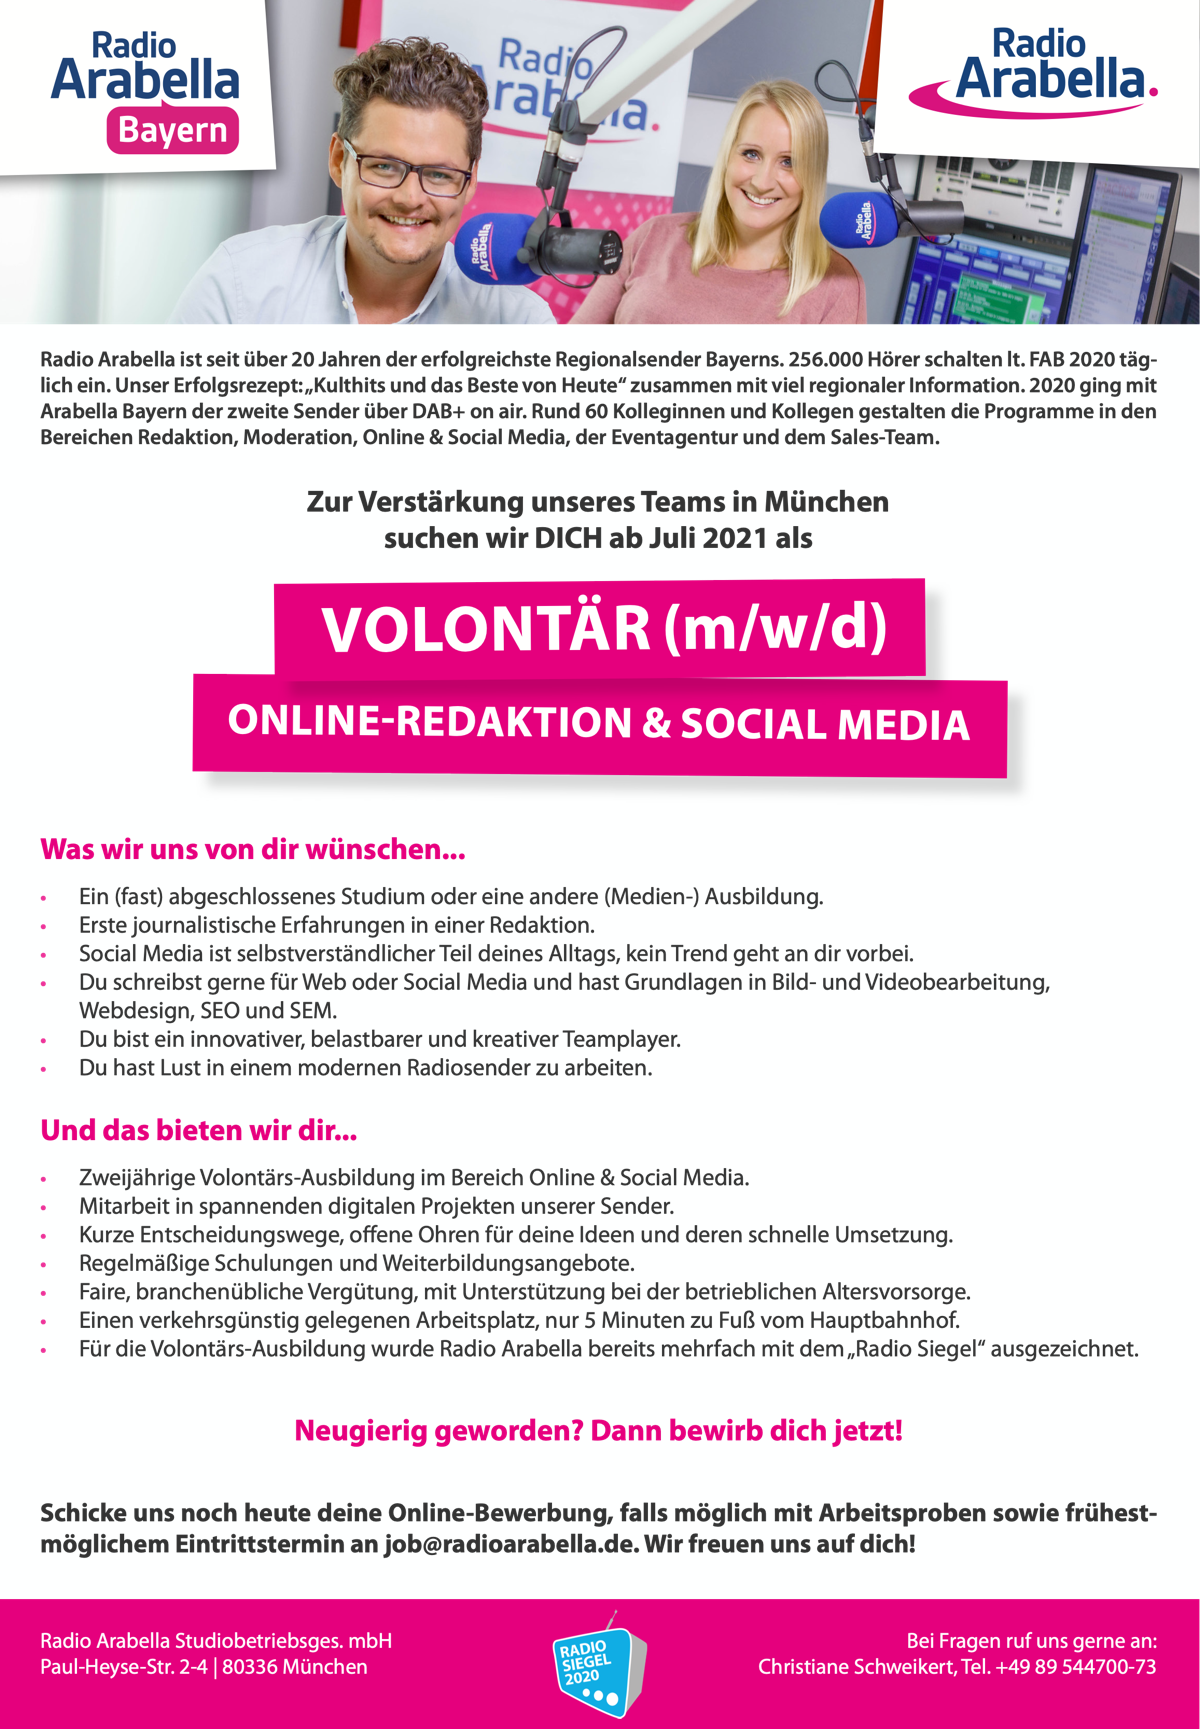 Radio Arabella sucht Volontär (m/w/d) Online-Redaktion & Social Media